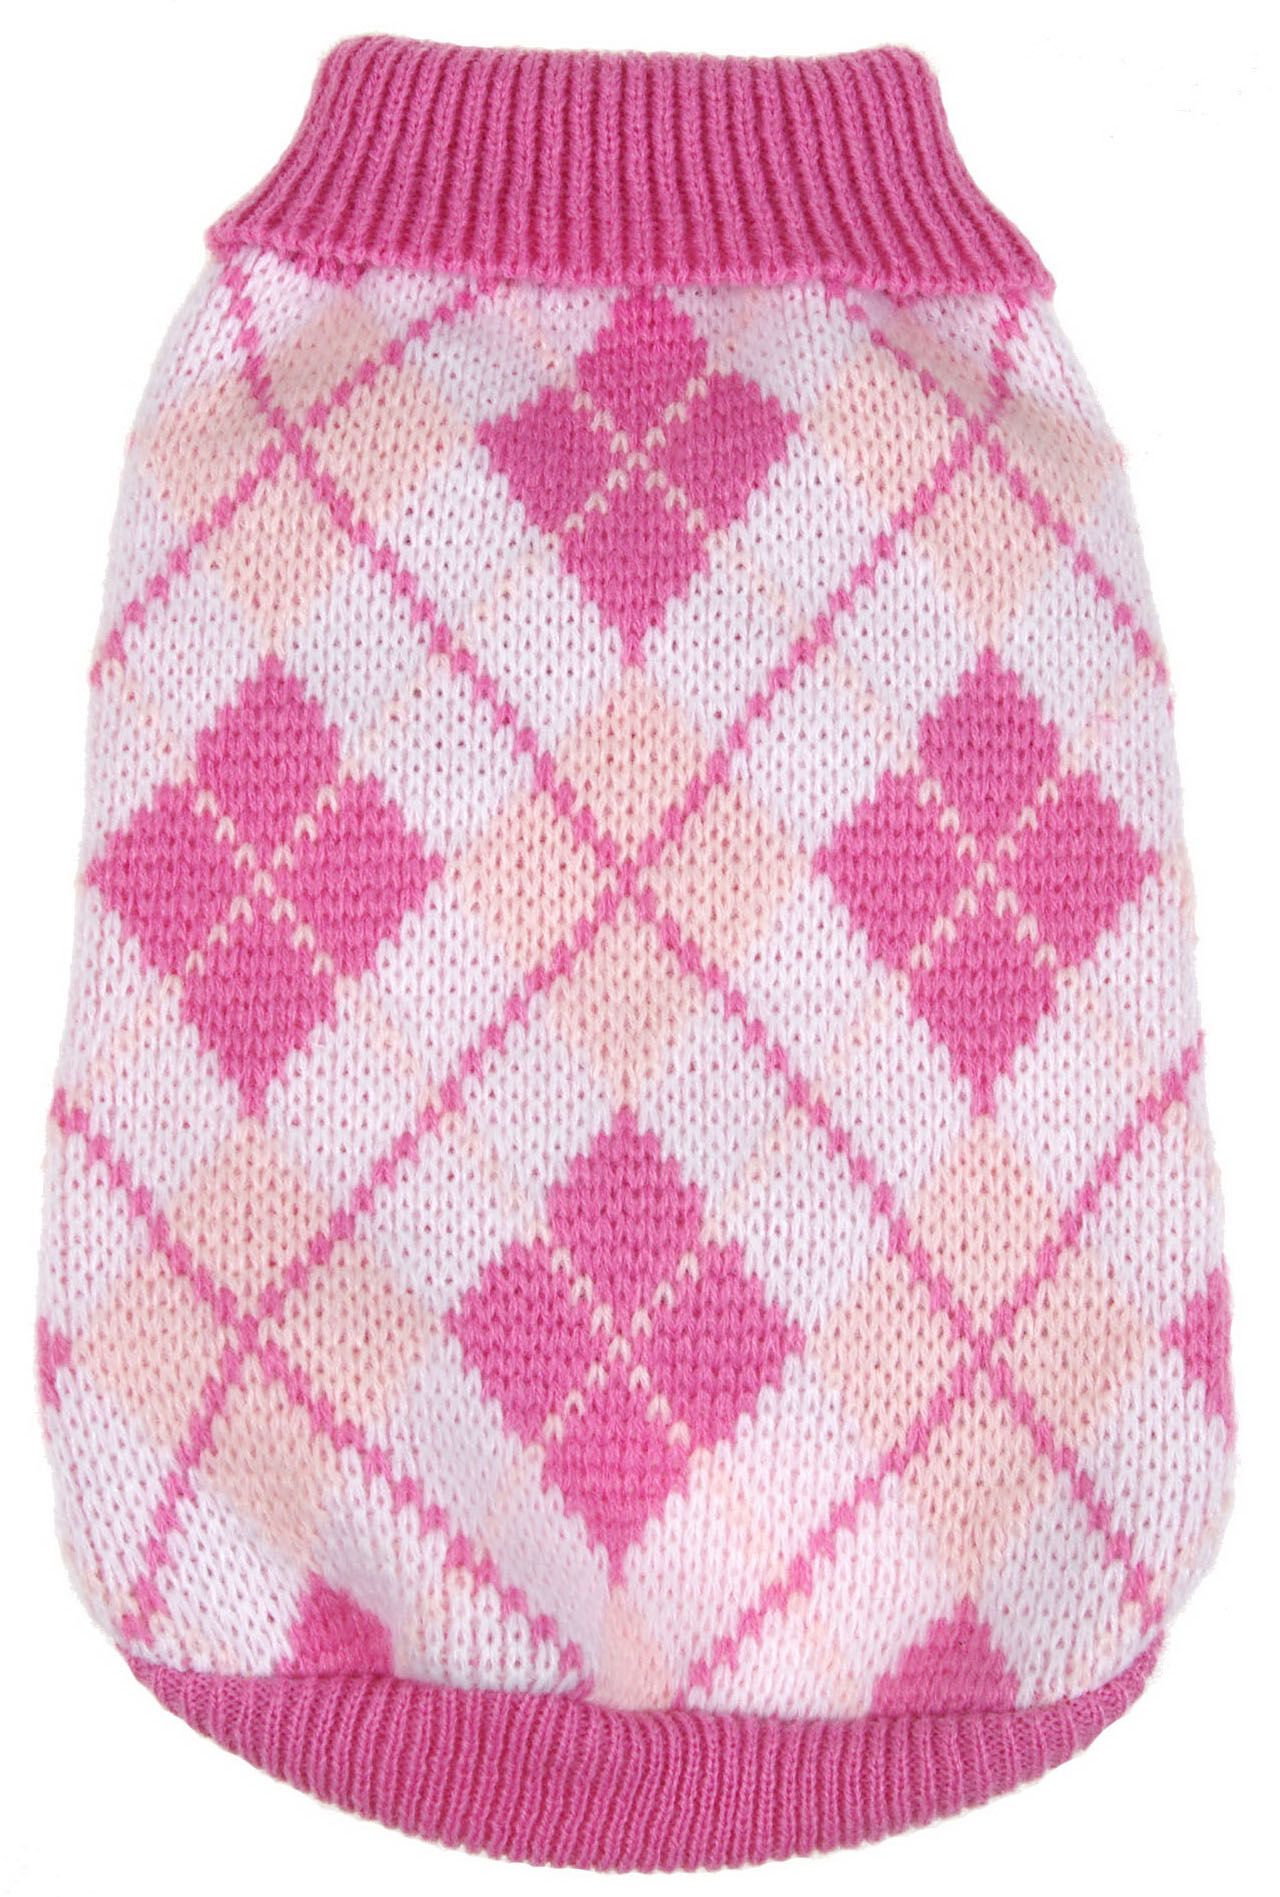 Argyle Style Ribbed Fashion Pet Sweater | Kmart